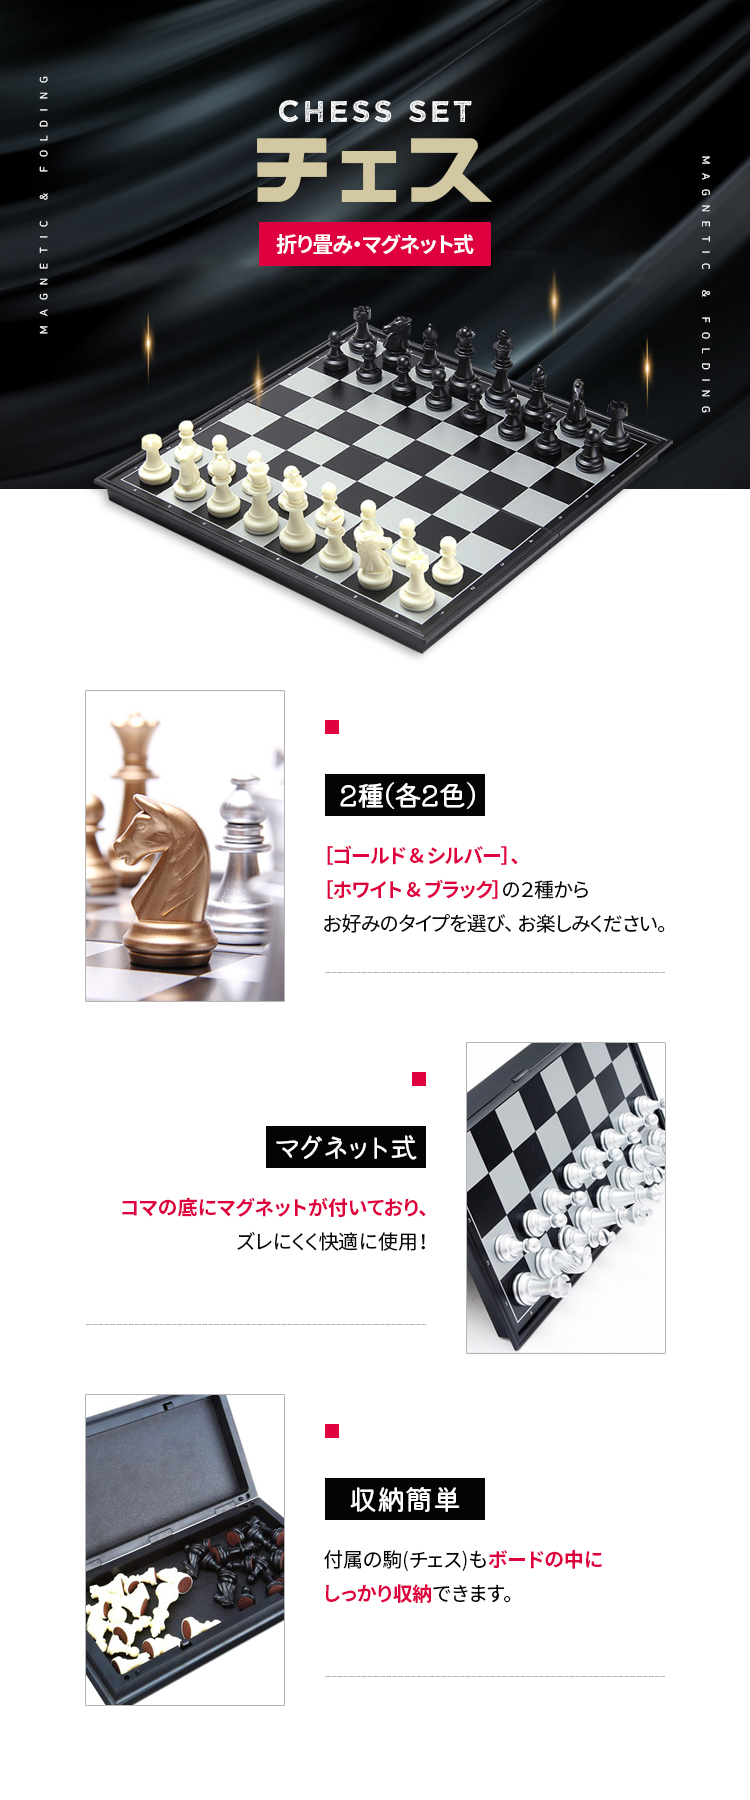 チェス チェスセット マグネット 折り畳み式 日本語説明書 チェス盤 おしゃれ チェス駒 ボードゲーム チェスゲーム コンパクト 収納 子供 大人  ファミリー